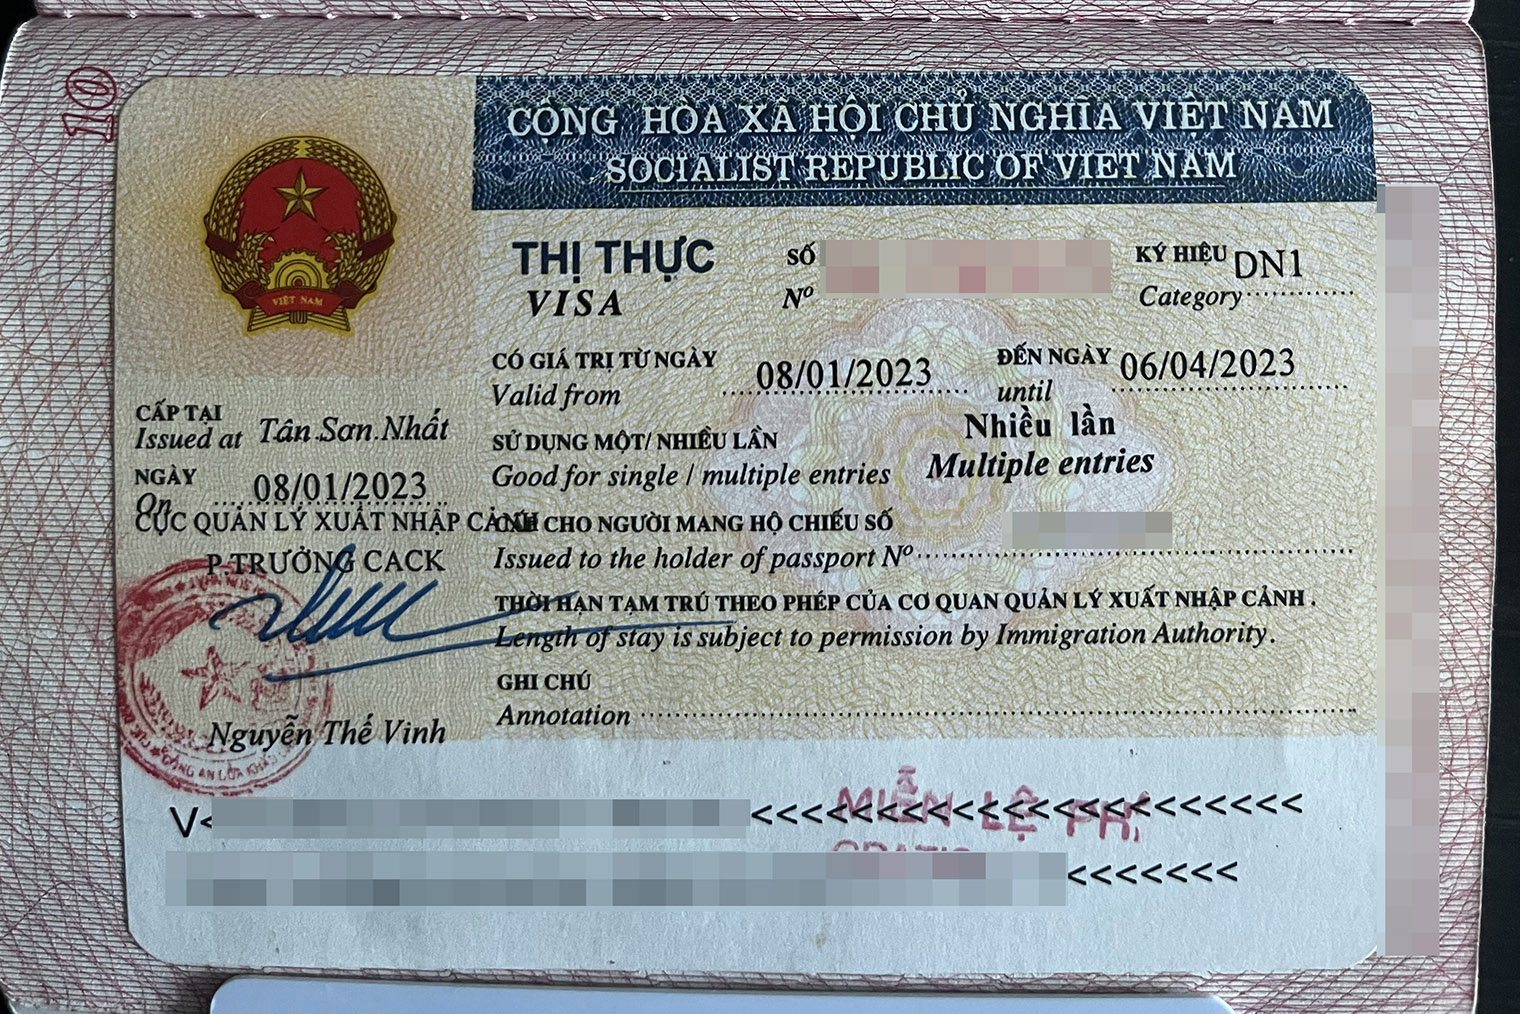 Вьетнамская виза многоразовая, она действовала три месяца